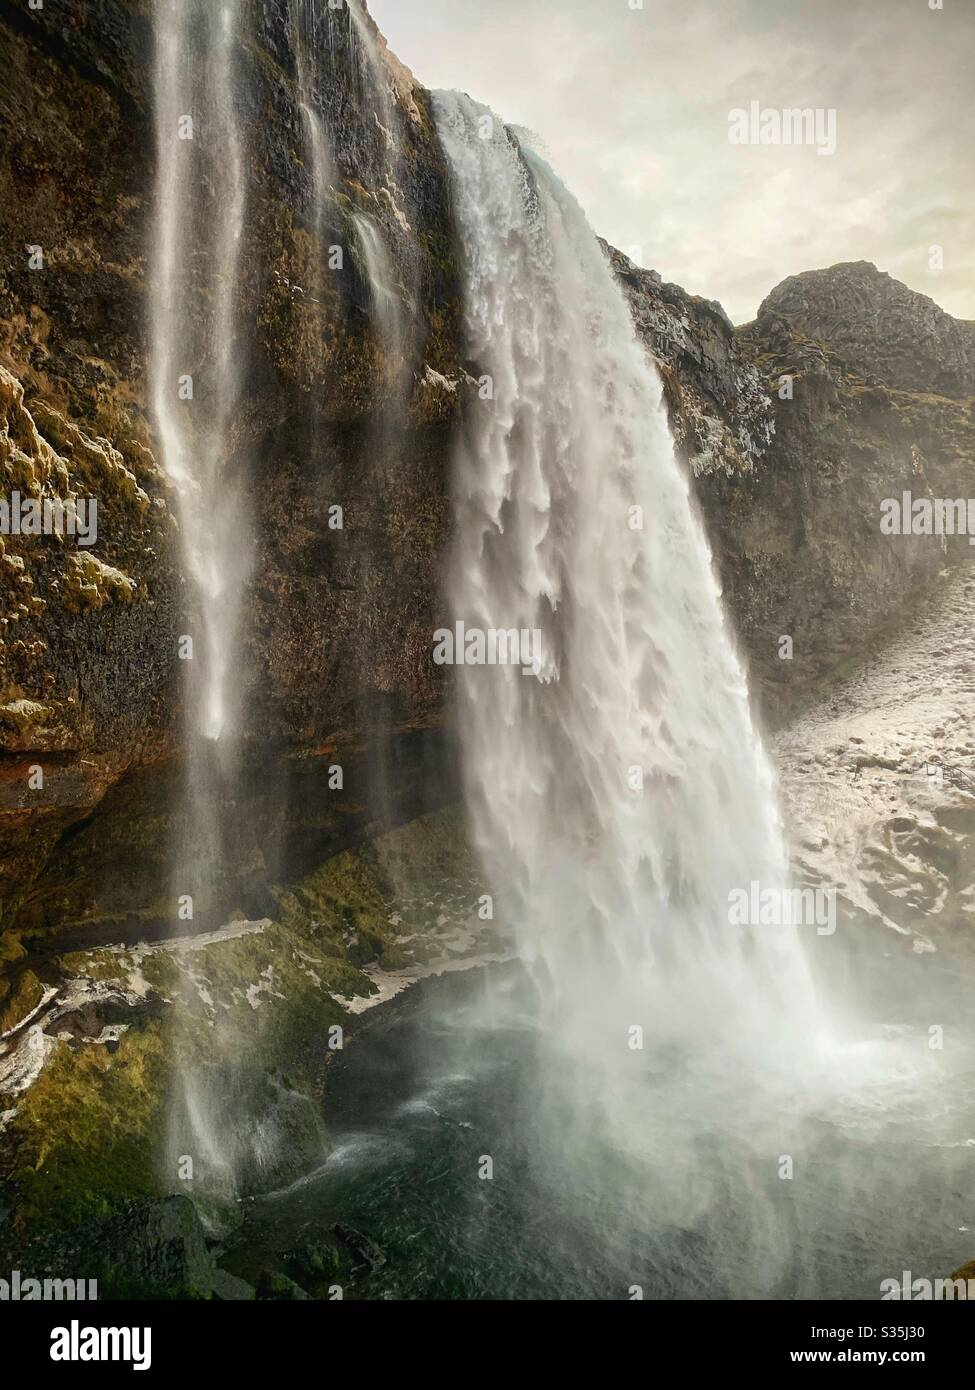 Kolossaler Wasserfall in Island. Verschneiten Boden. Schiere Felswand. Seljalandsfoss, Island. Stockfoto